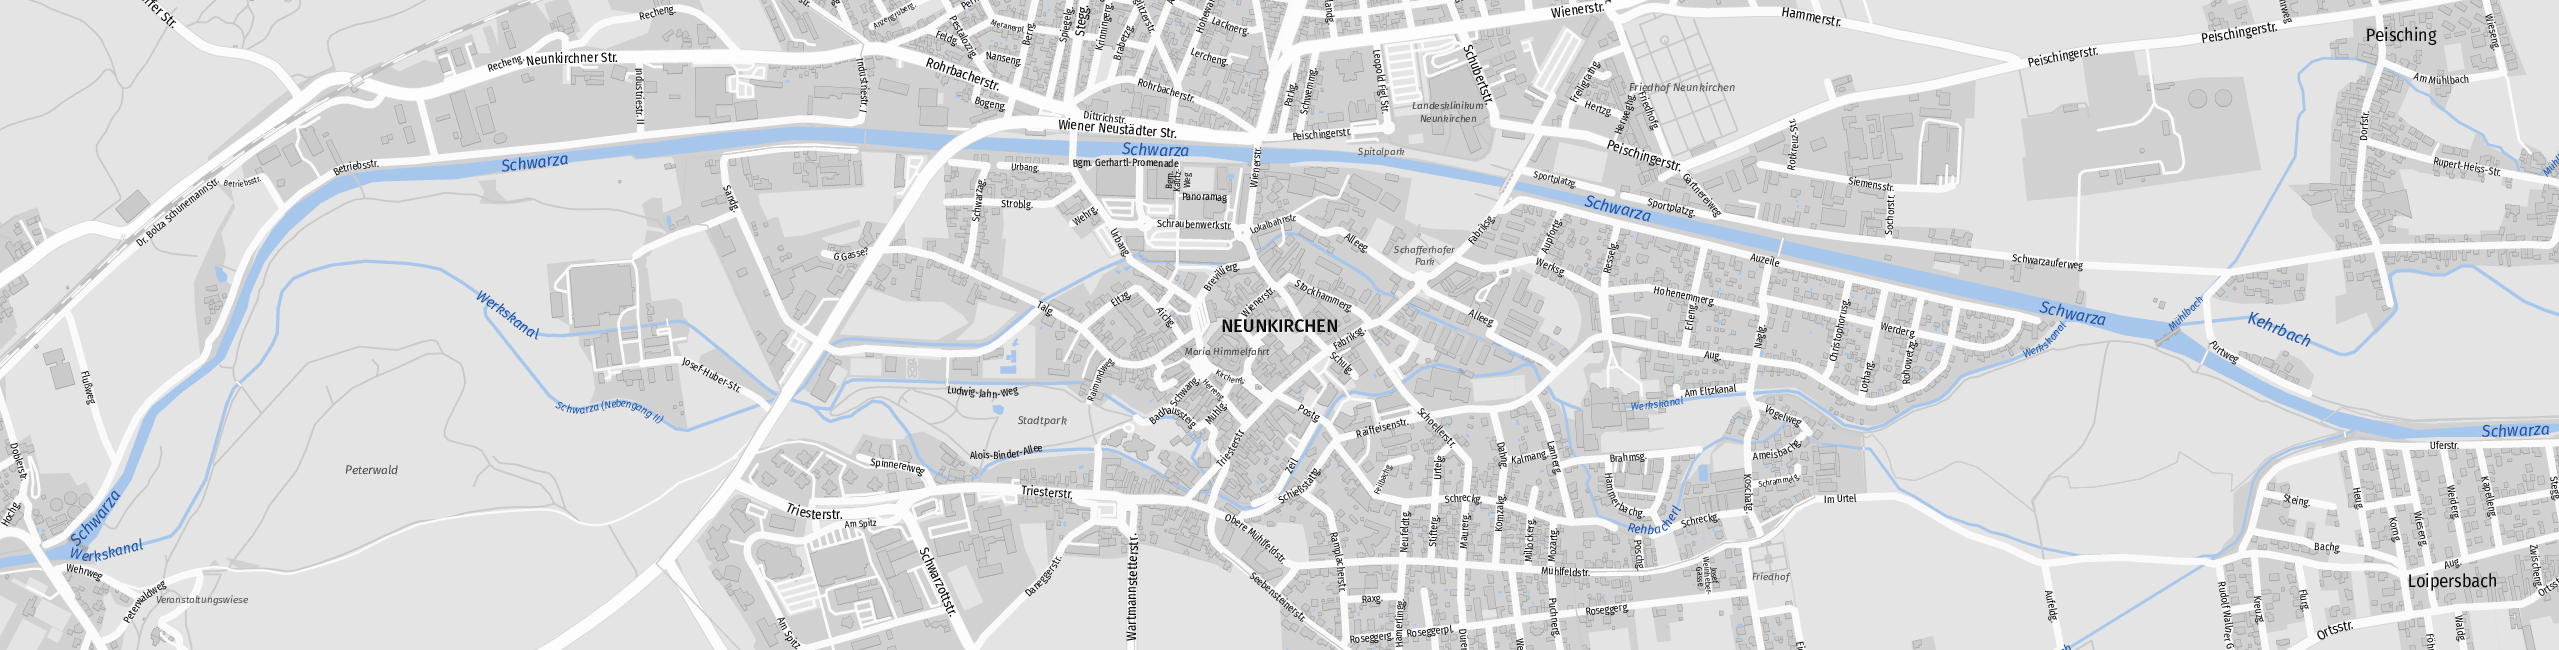 Stadtplan Neunkirchen zum Downloaden.